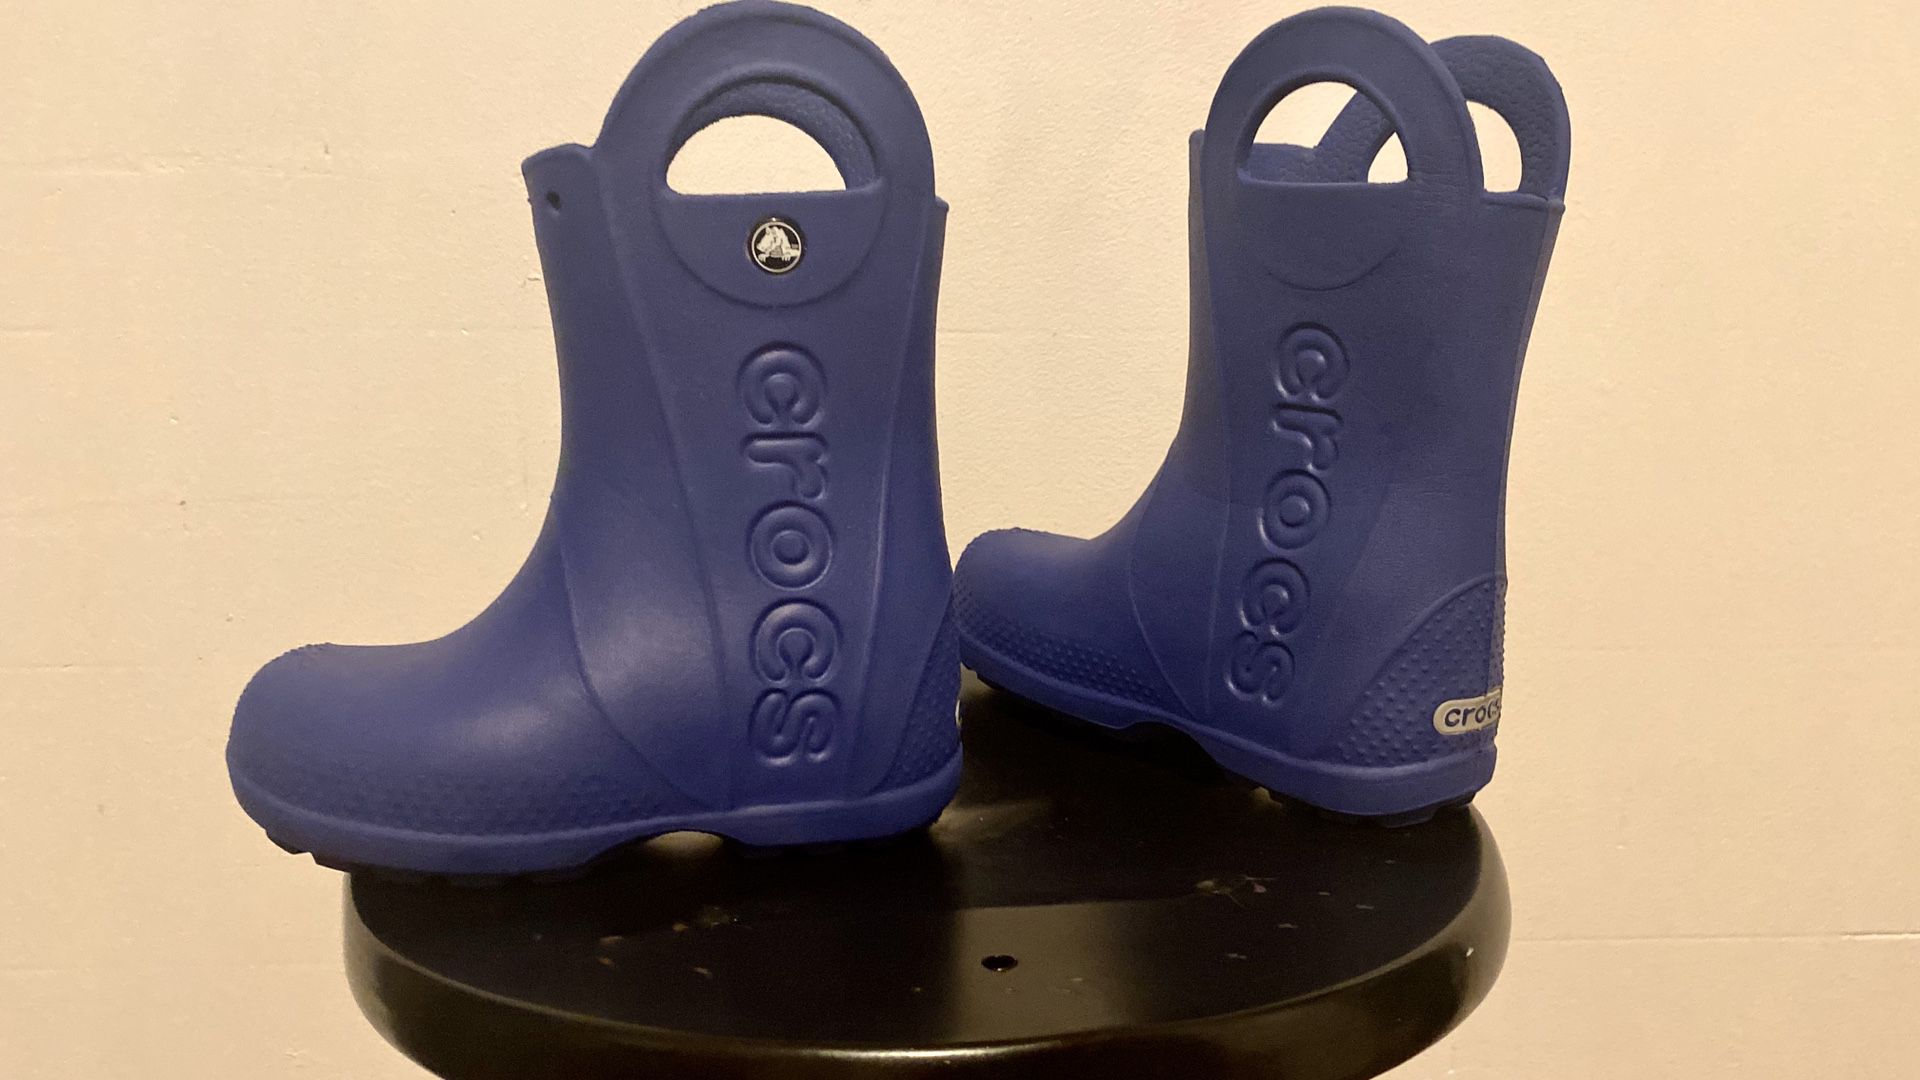 Crocs Rain Boots For Kids